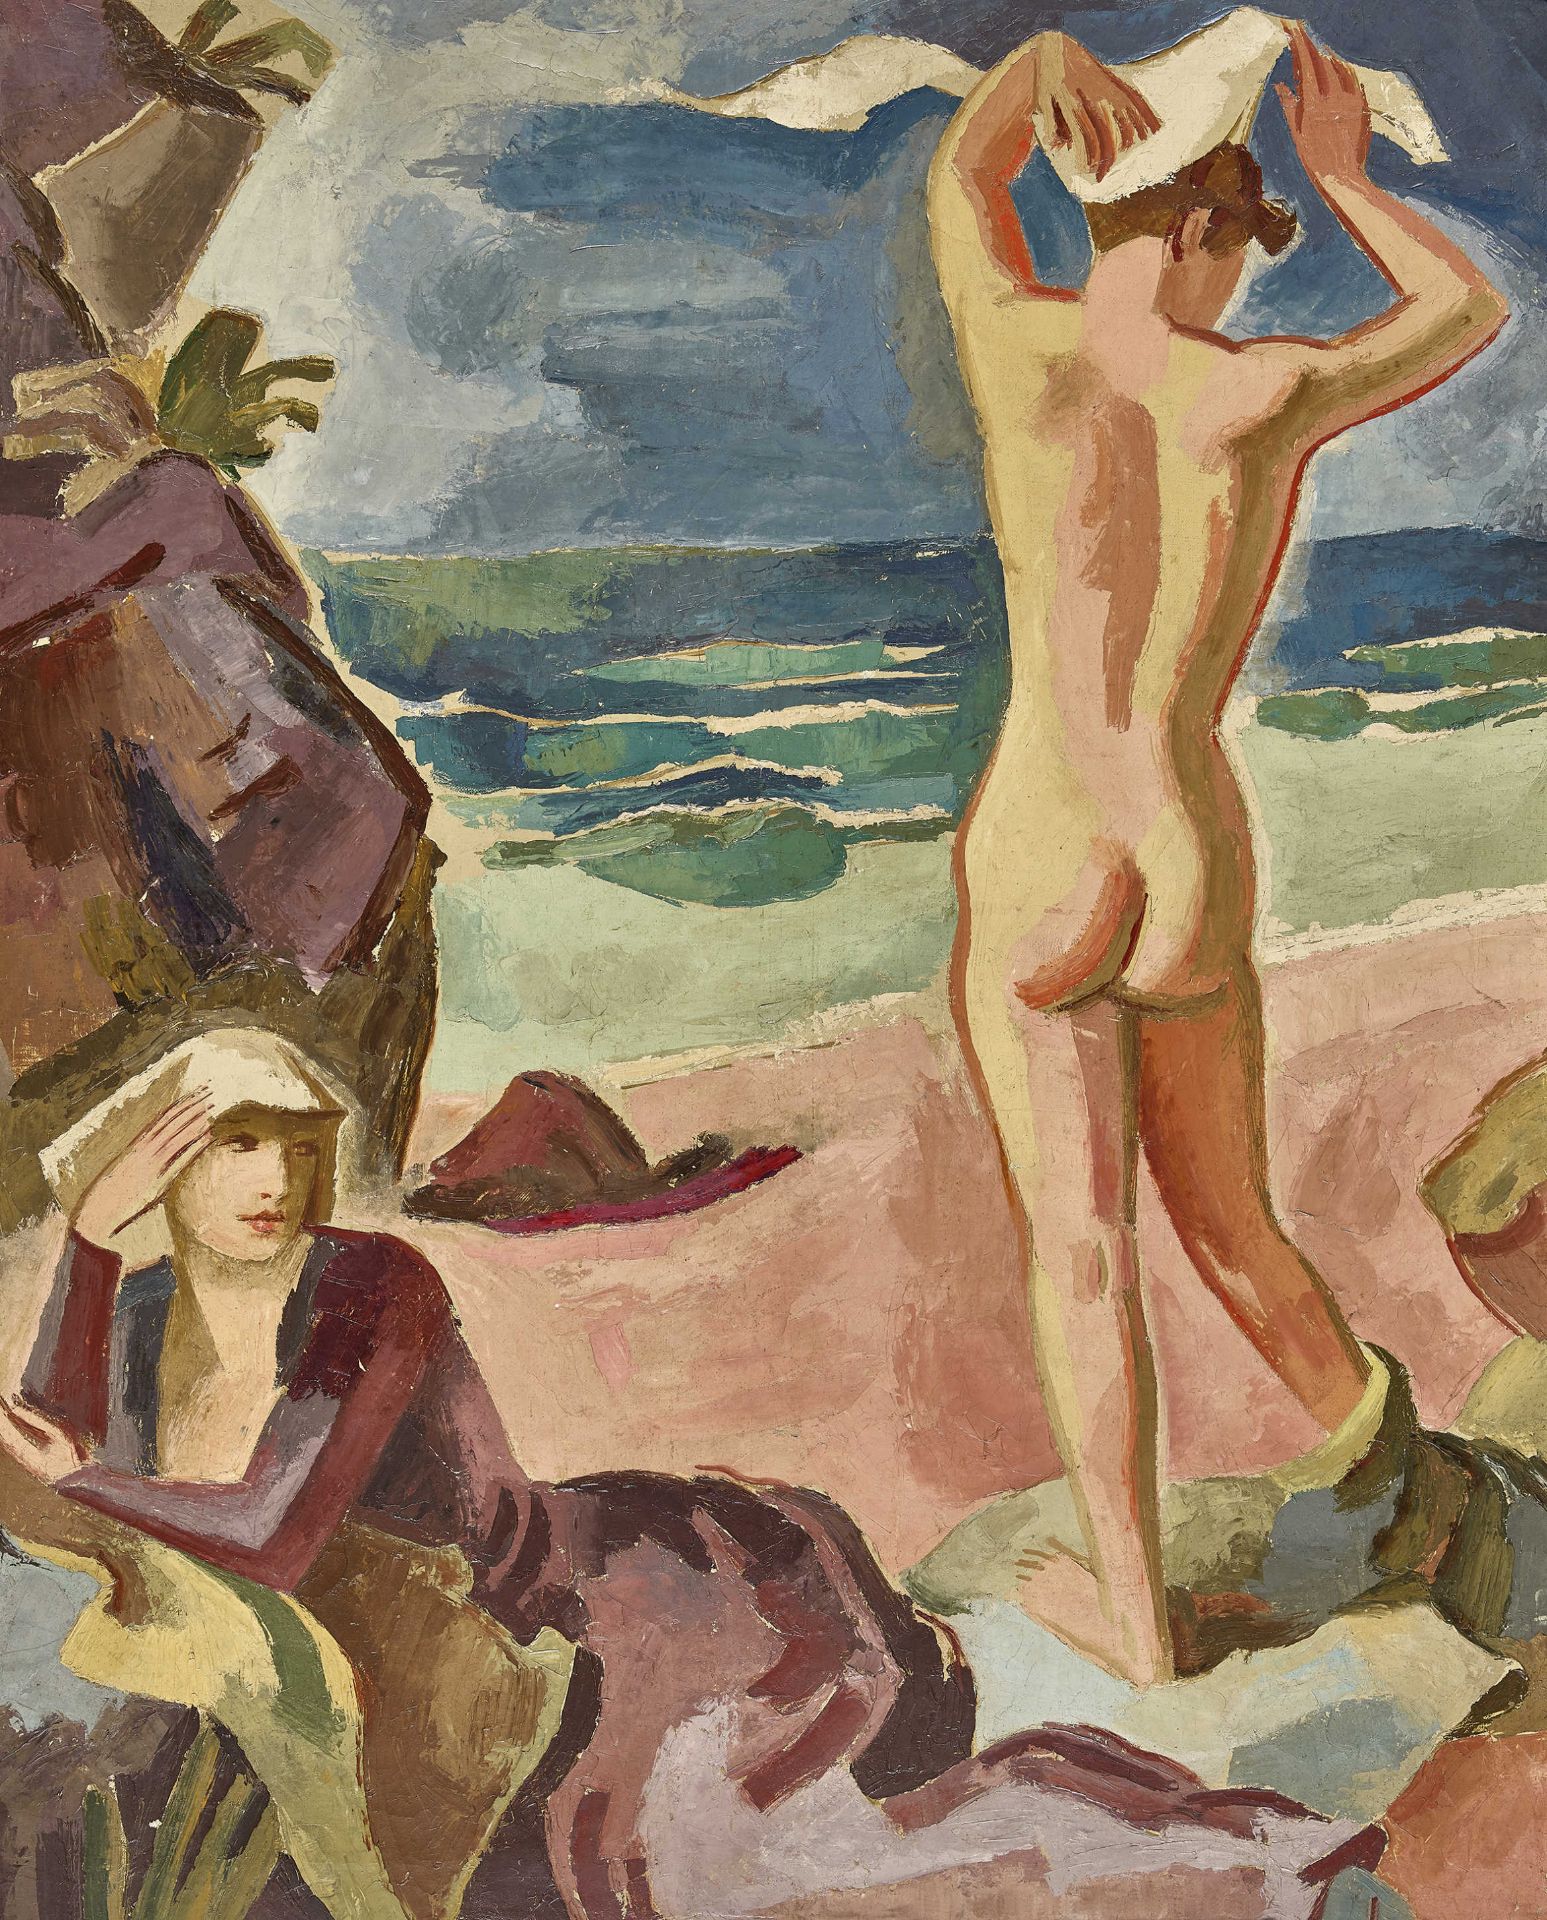 URECH, RUDOLF: Rückenakt und sitzende Frau am Strand.